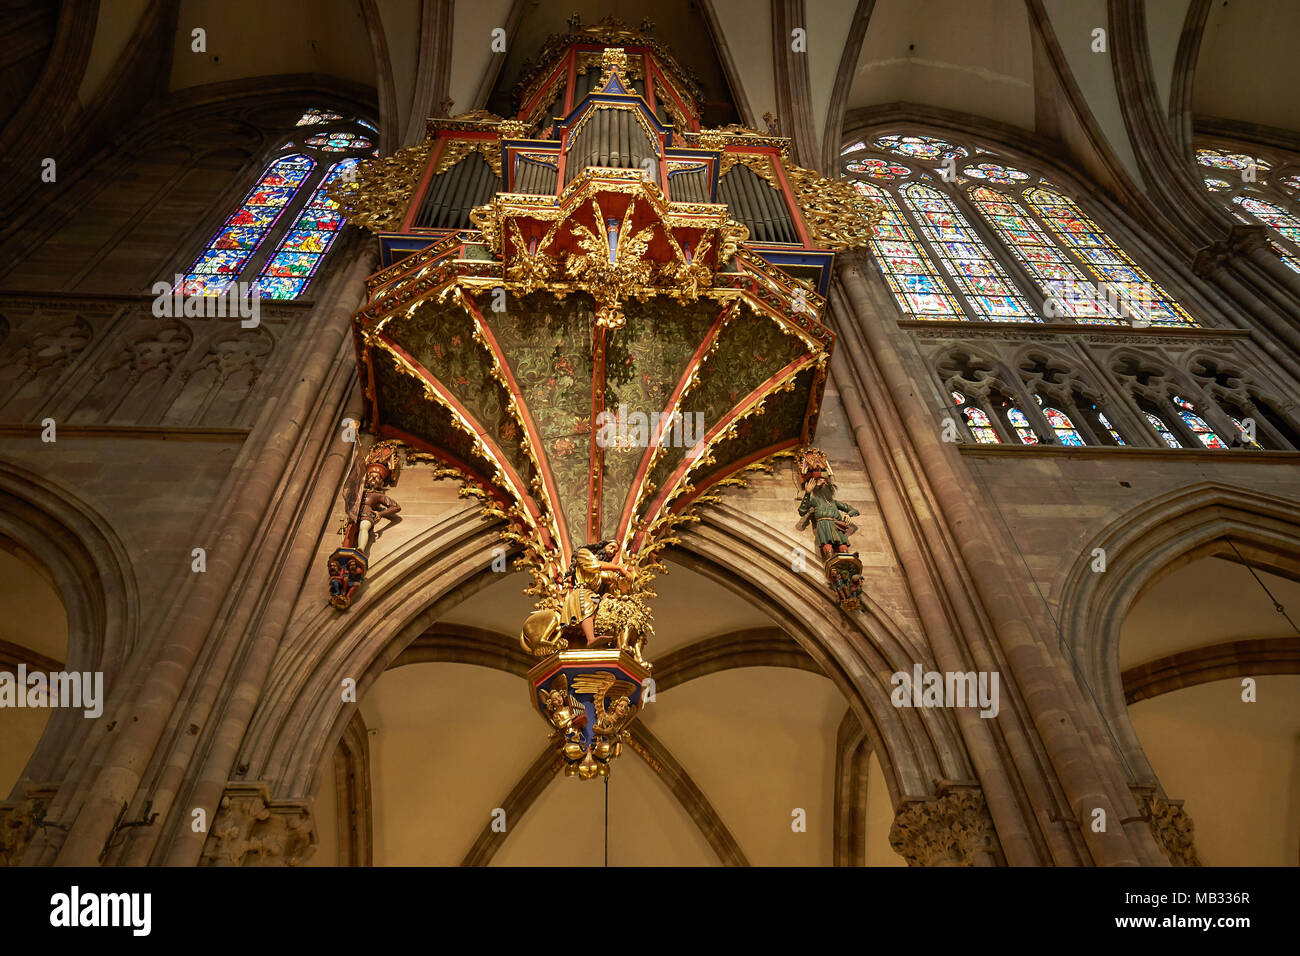 Orgue, orgue gothique swallow nest dans la nef, la cathédrale de Strasbourg, Strasbourg, Alsace, France Banque D'Images